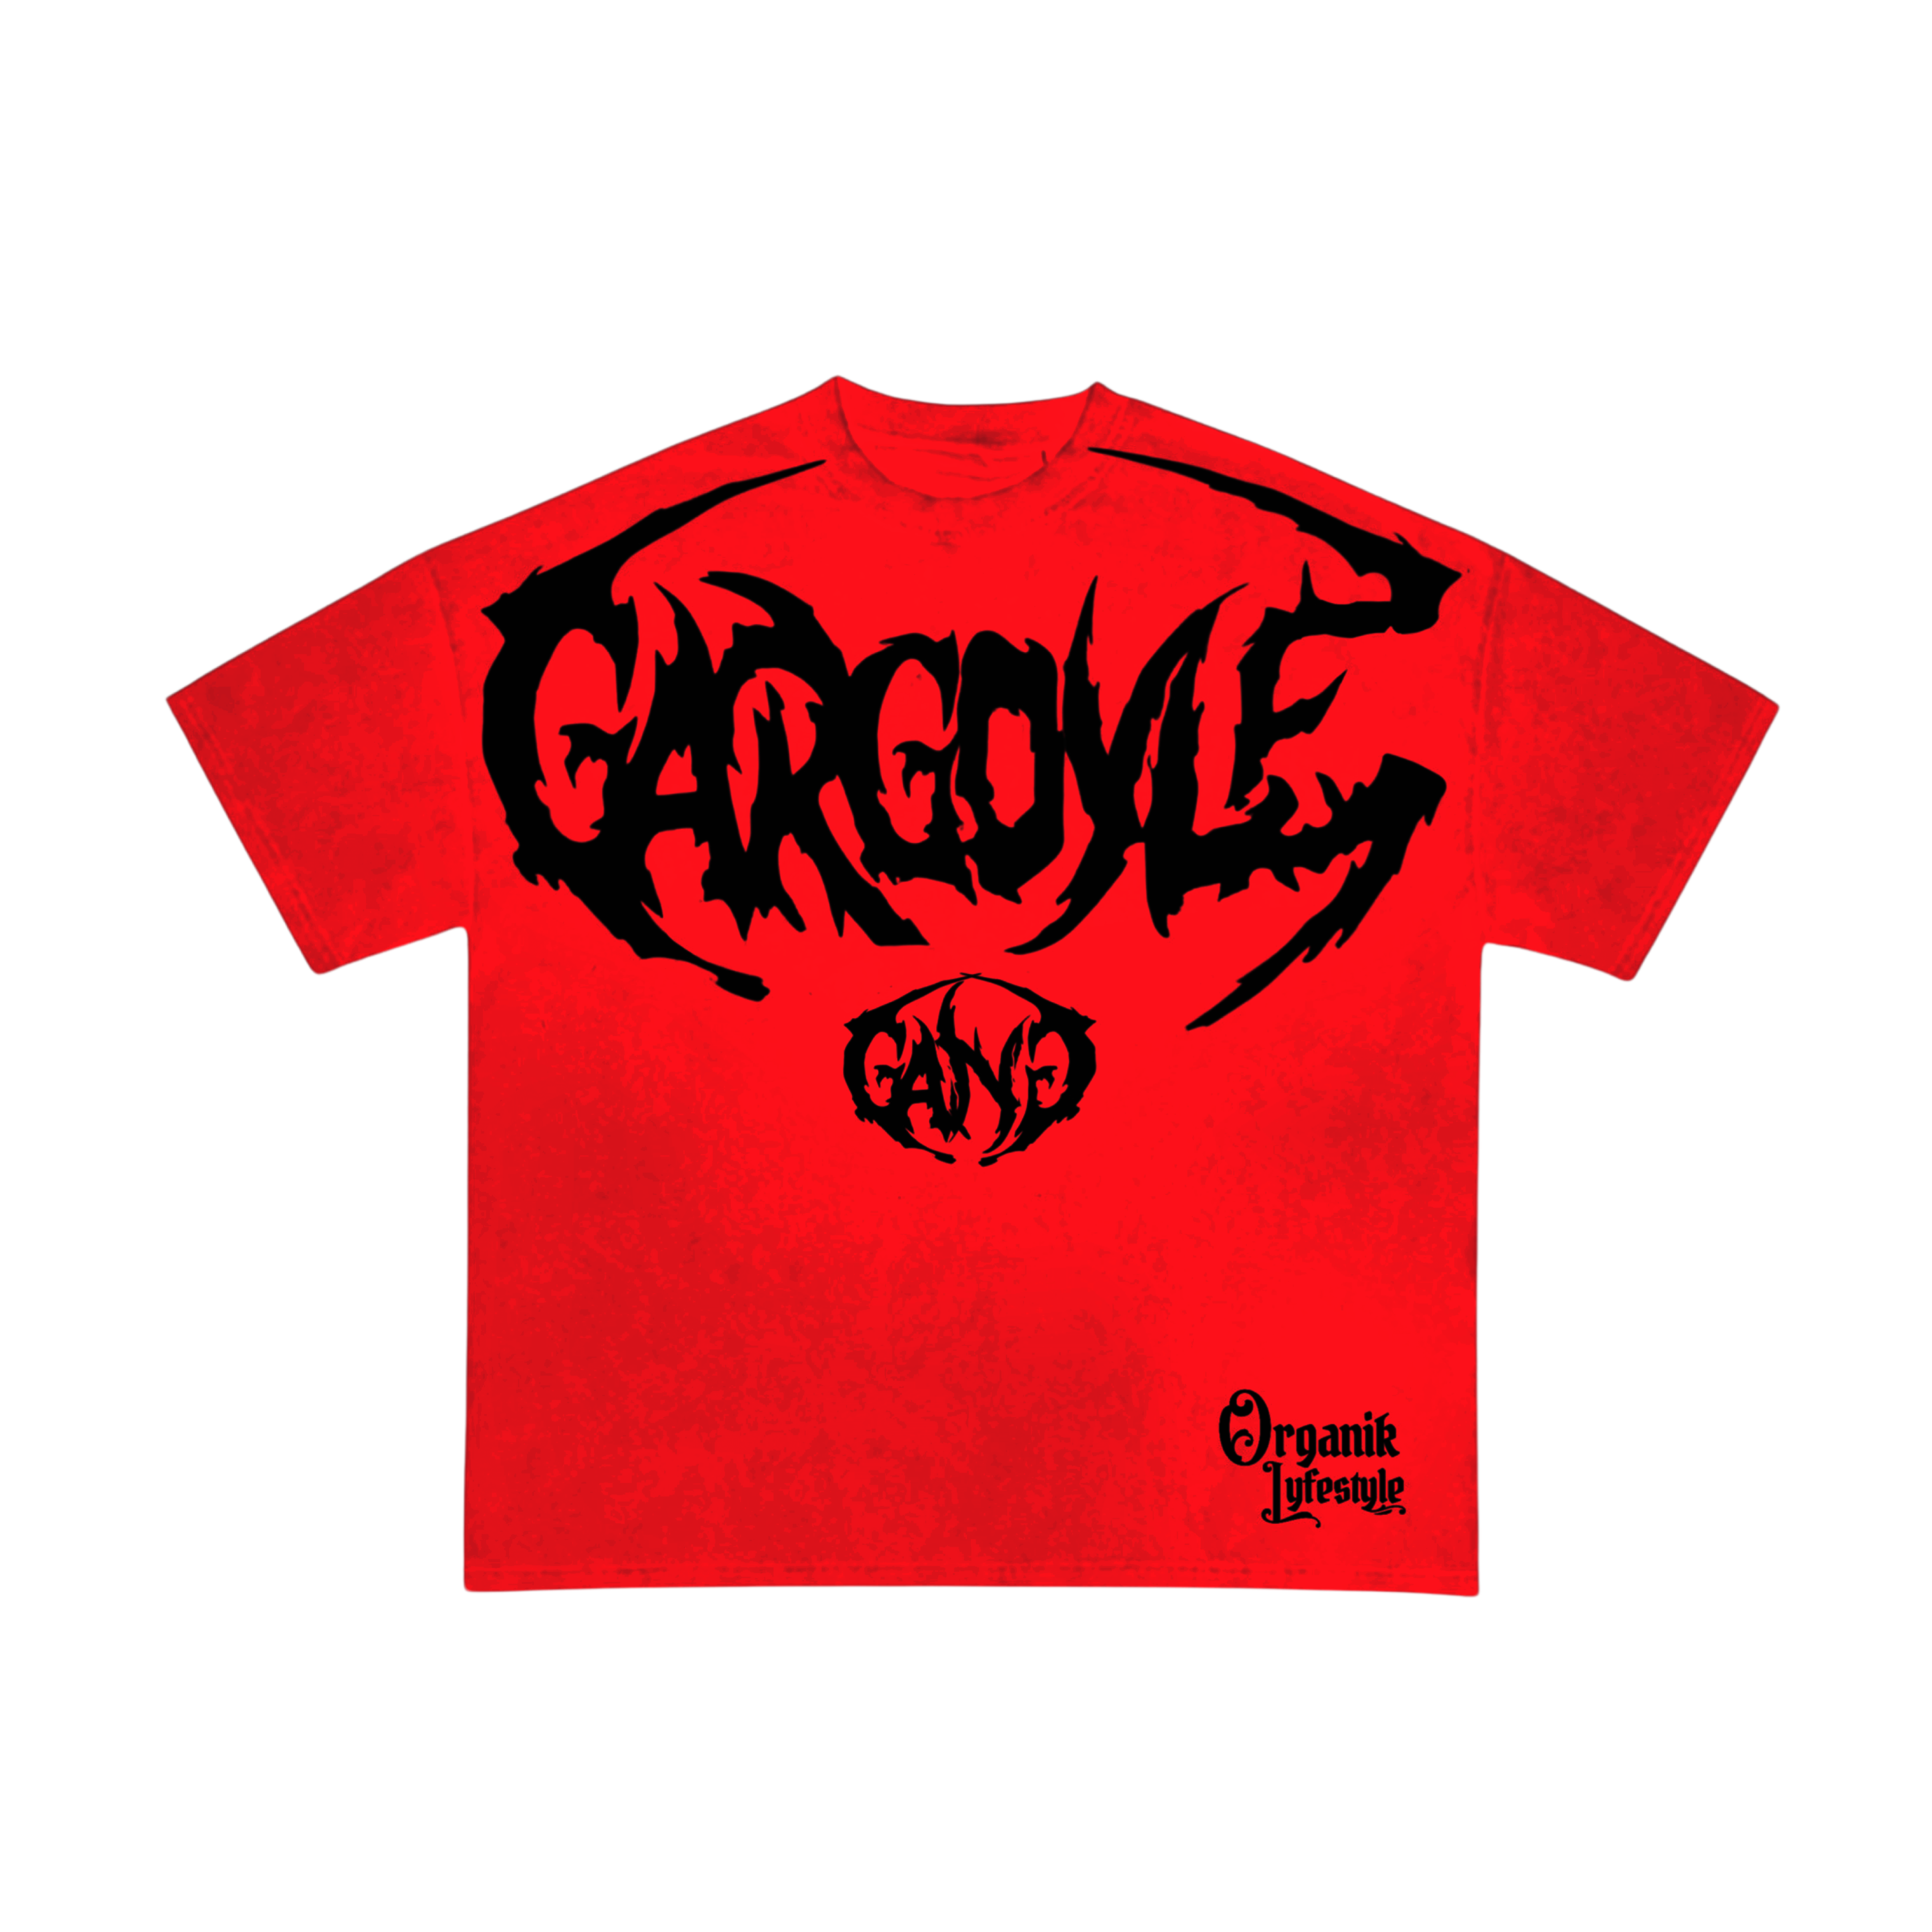 Organik Lyfestyle - Gargoyle G.A.N.G T-Shirt - Red